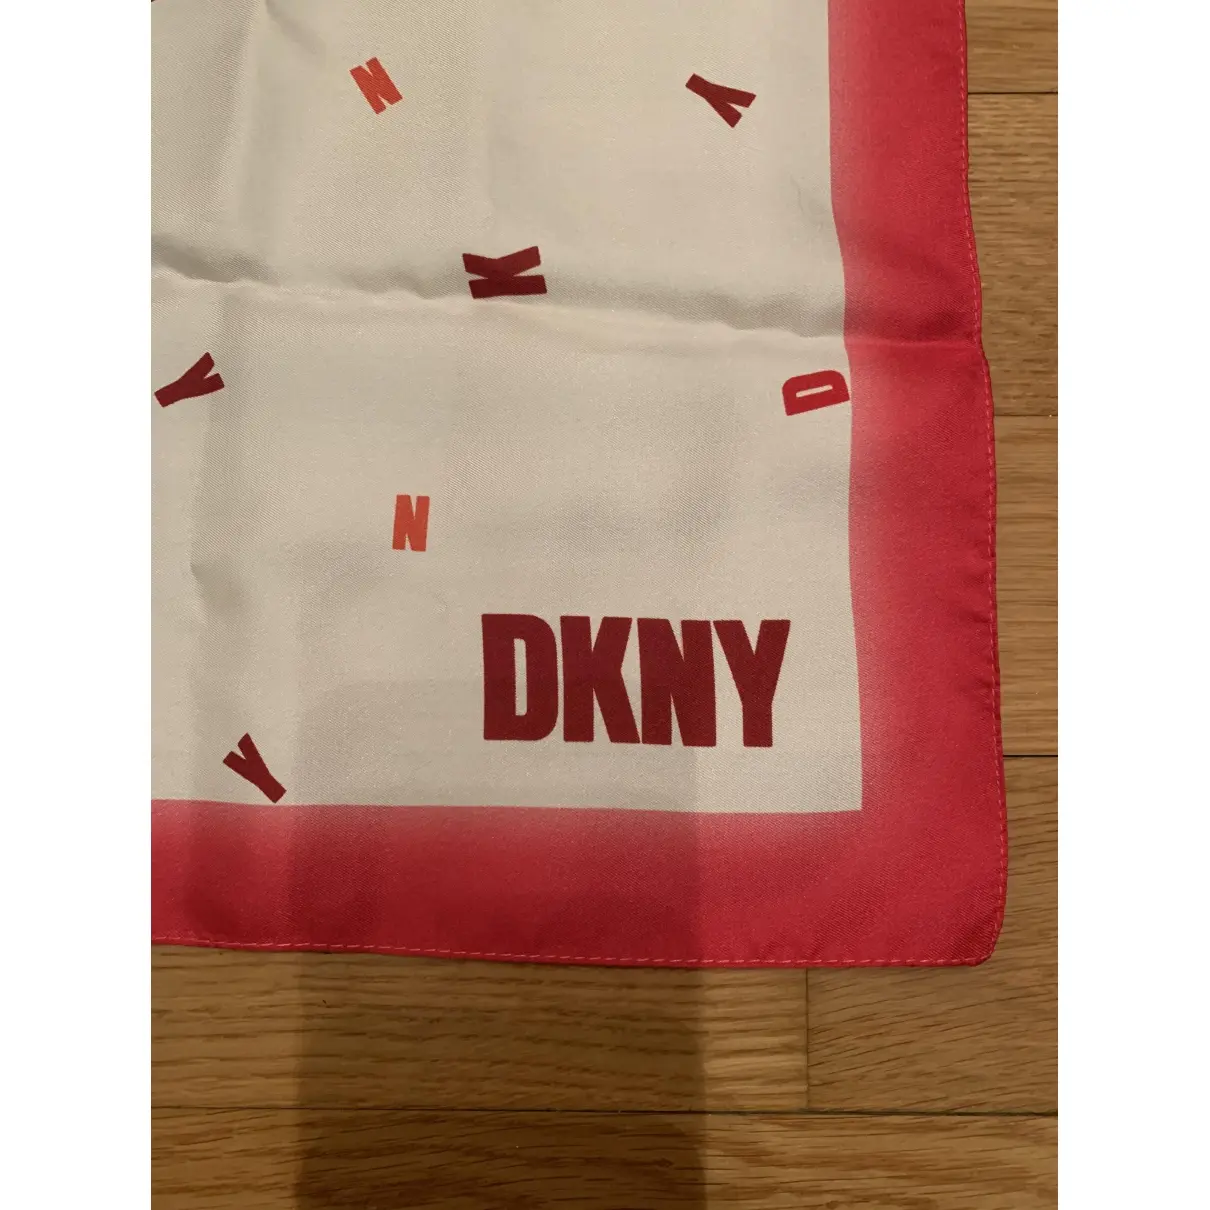 Dkny Silk handkerchief for sale